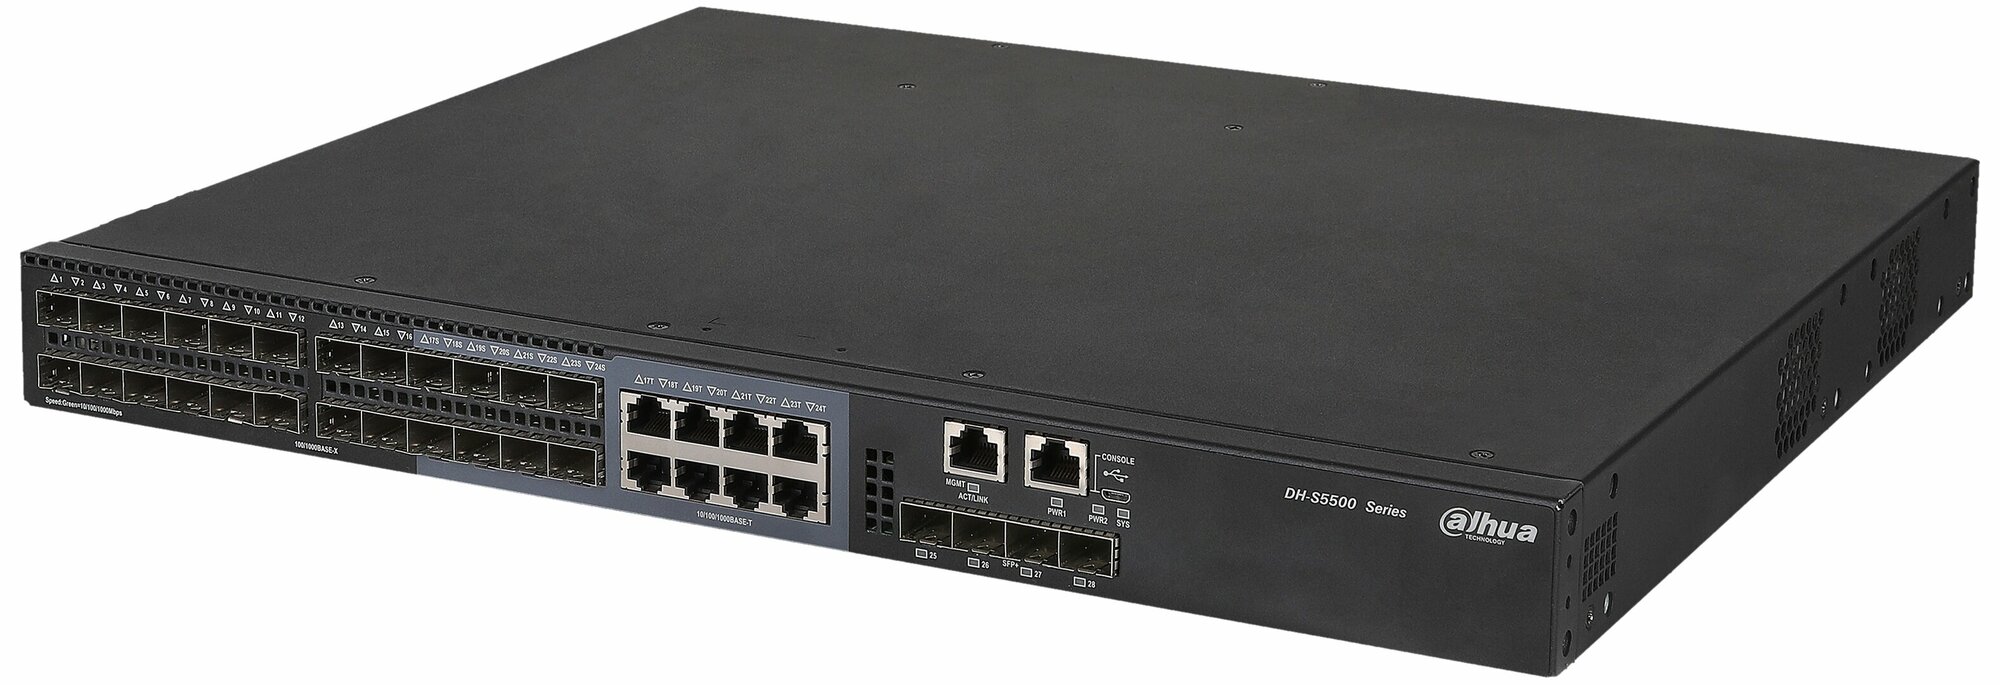 Сетевое оборудование DAHUA 28-портовый управляемый коммутатор, уровень L2+Порты: 16 SFP 1000Мбит/с, 8 комбинированных SFP/RJ45 1000Мбит/с, 4 SFP+ 10Гбит/с (uplink), питание: 100~240В(AC), грозозащита: до 2кВ (DH-S5500-24GF4XF-E)